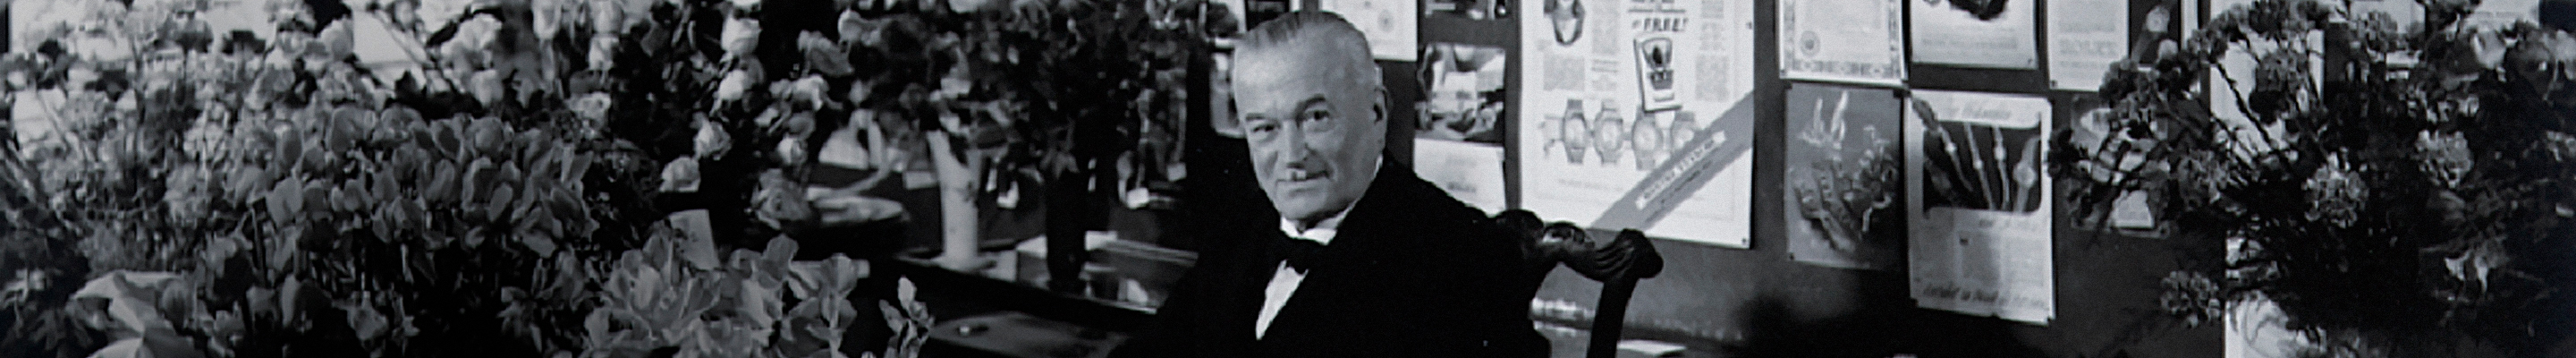 Hans Wilsdorf, un emprendedor visionario